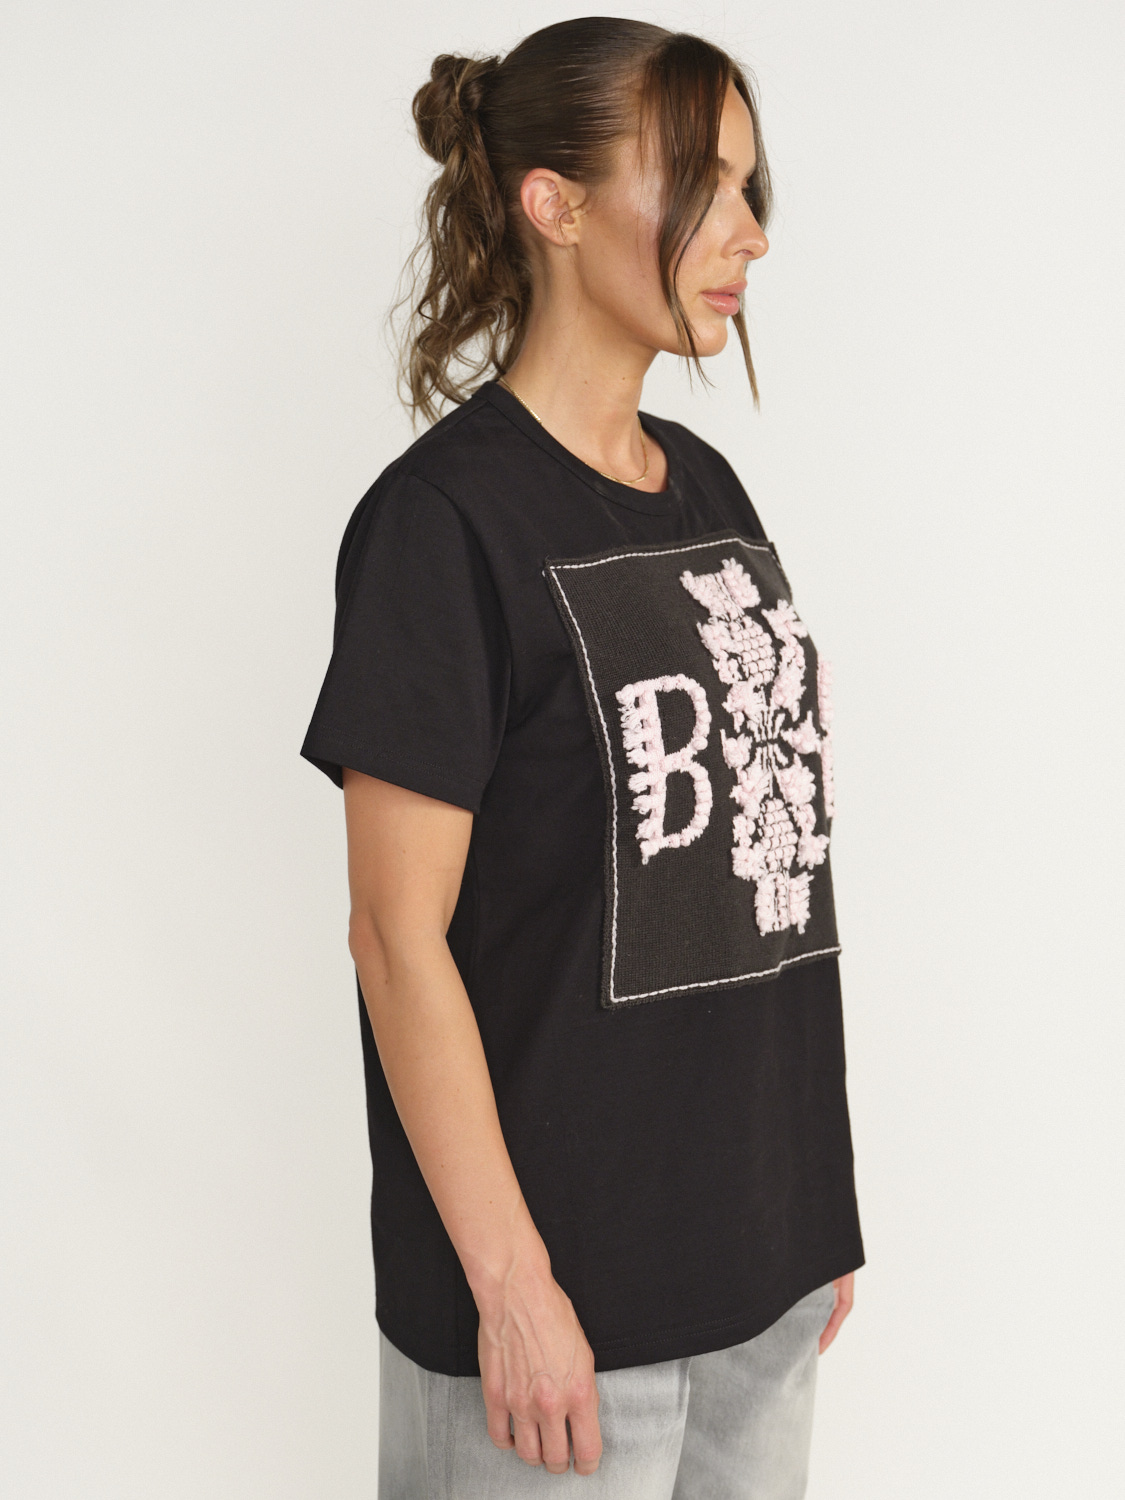 Barrie Barrie - Thistle - T - Shirt avec logo écusson braun XS